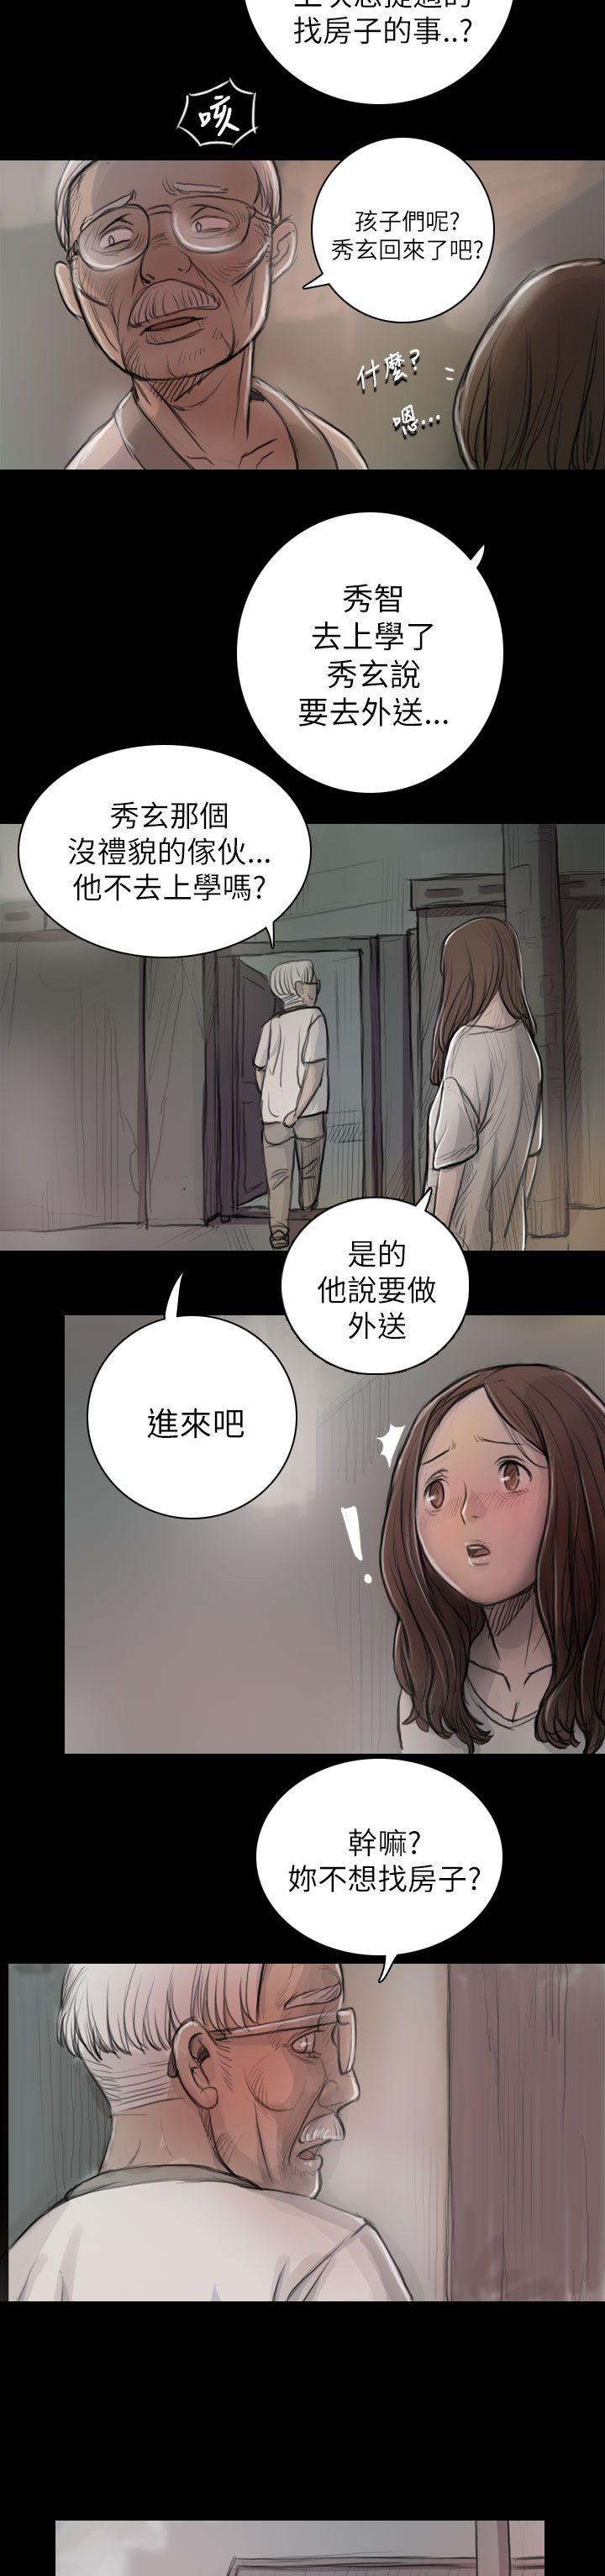 韩国污漫画 姊姊: 蓮 第8话 19